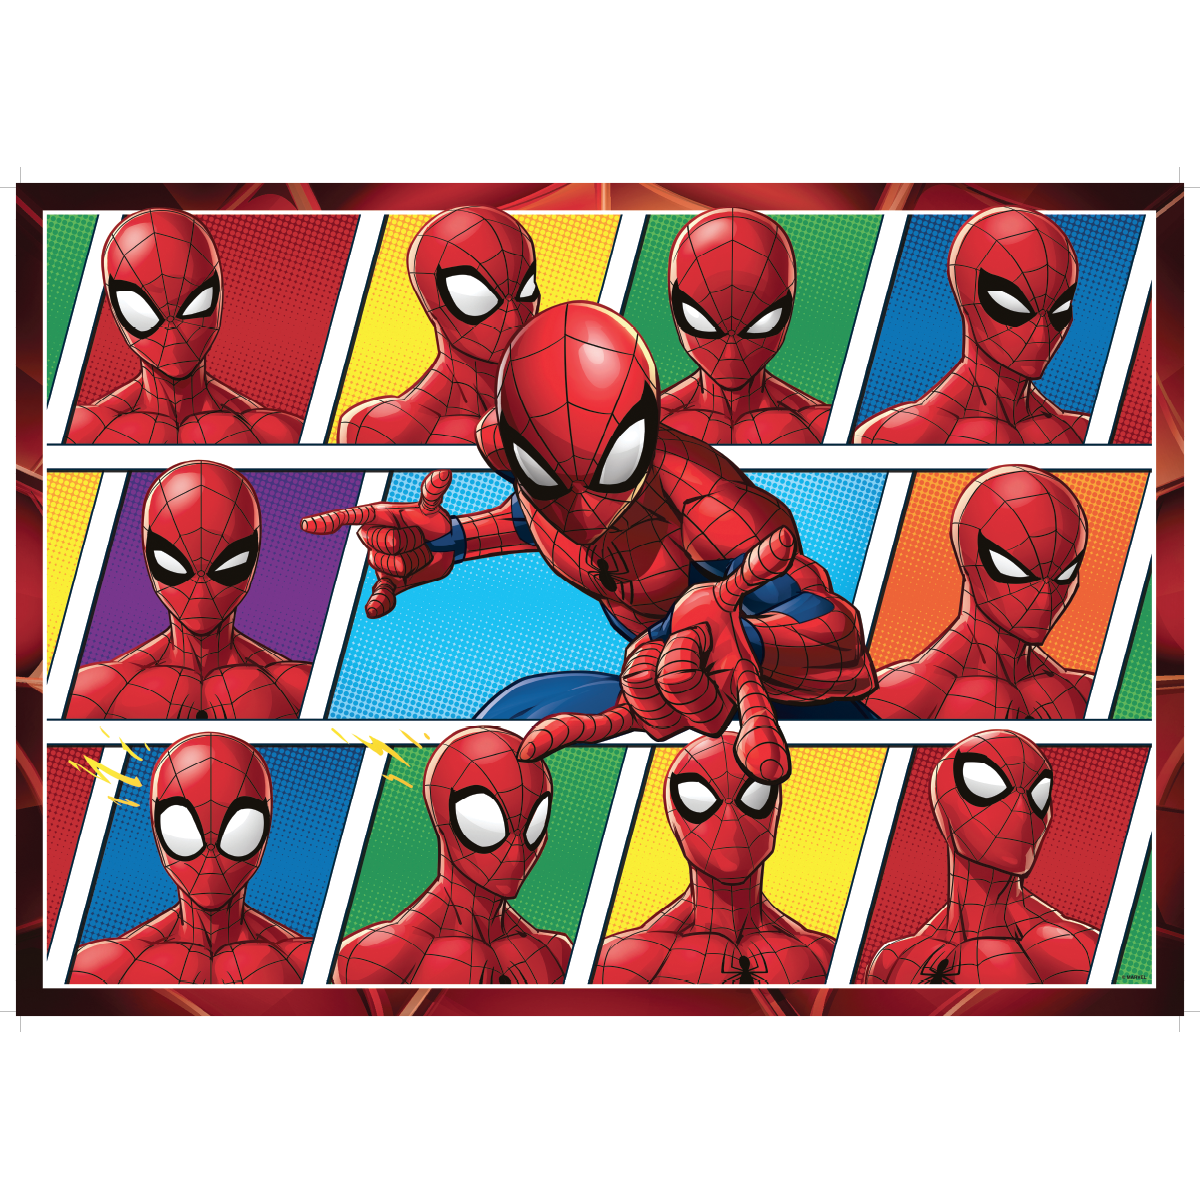 Ravensburger - puzzle 125 pezzi formato giant - per bambini a partire dai 6 anni - spiderman - RAVENSBURGER, Avengers, Spiderman